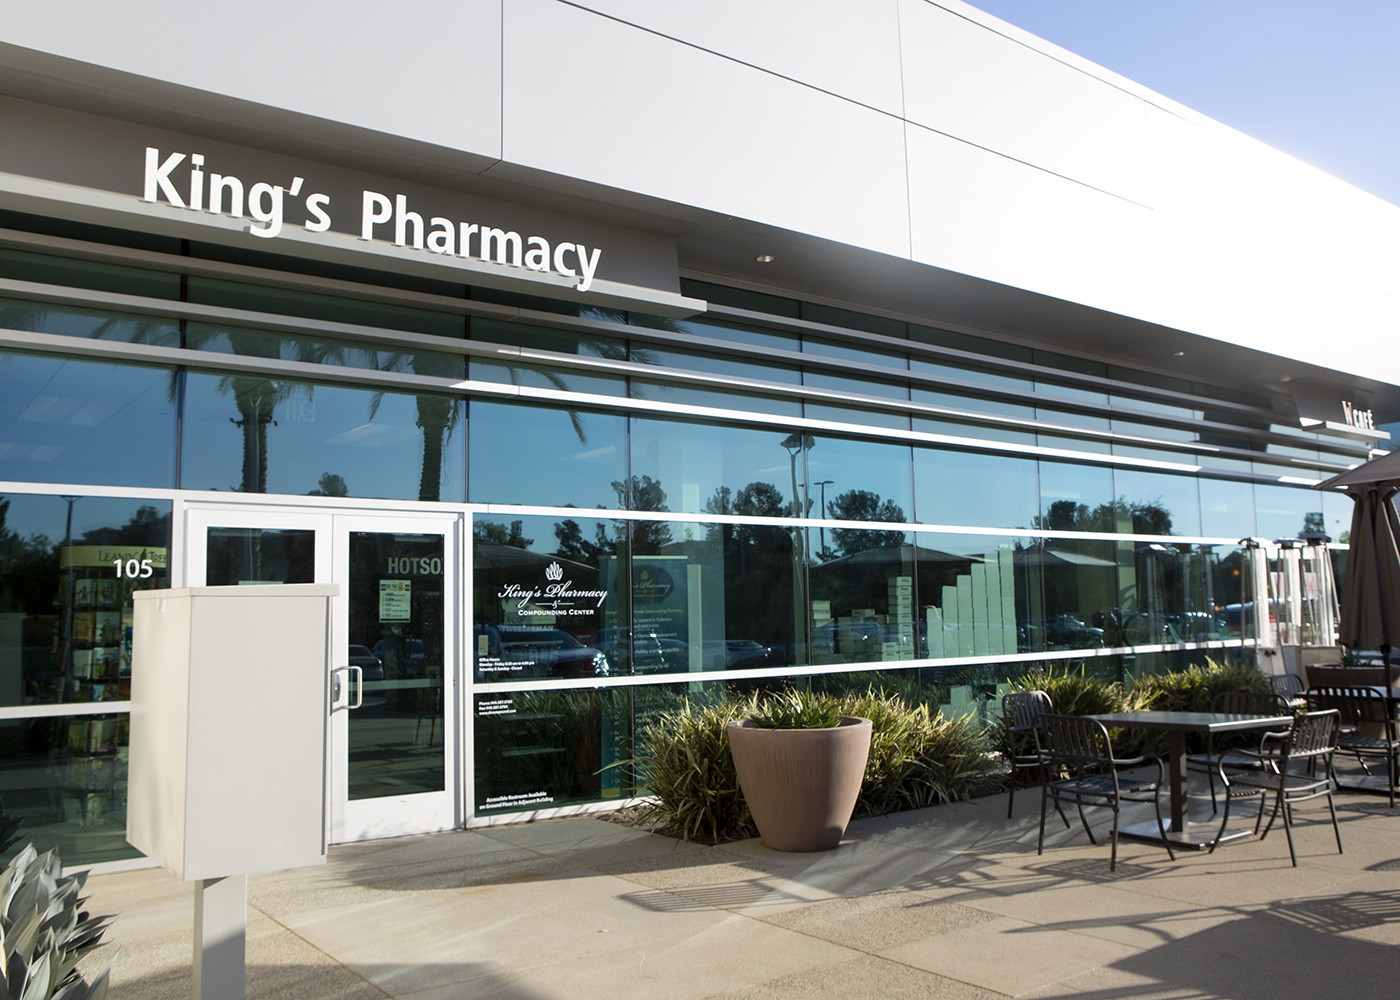 King's Pharmacy & Compounding Center